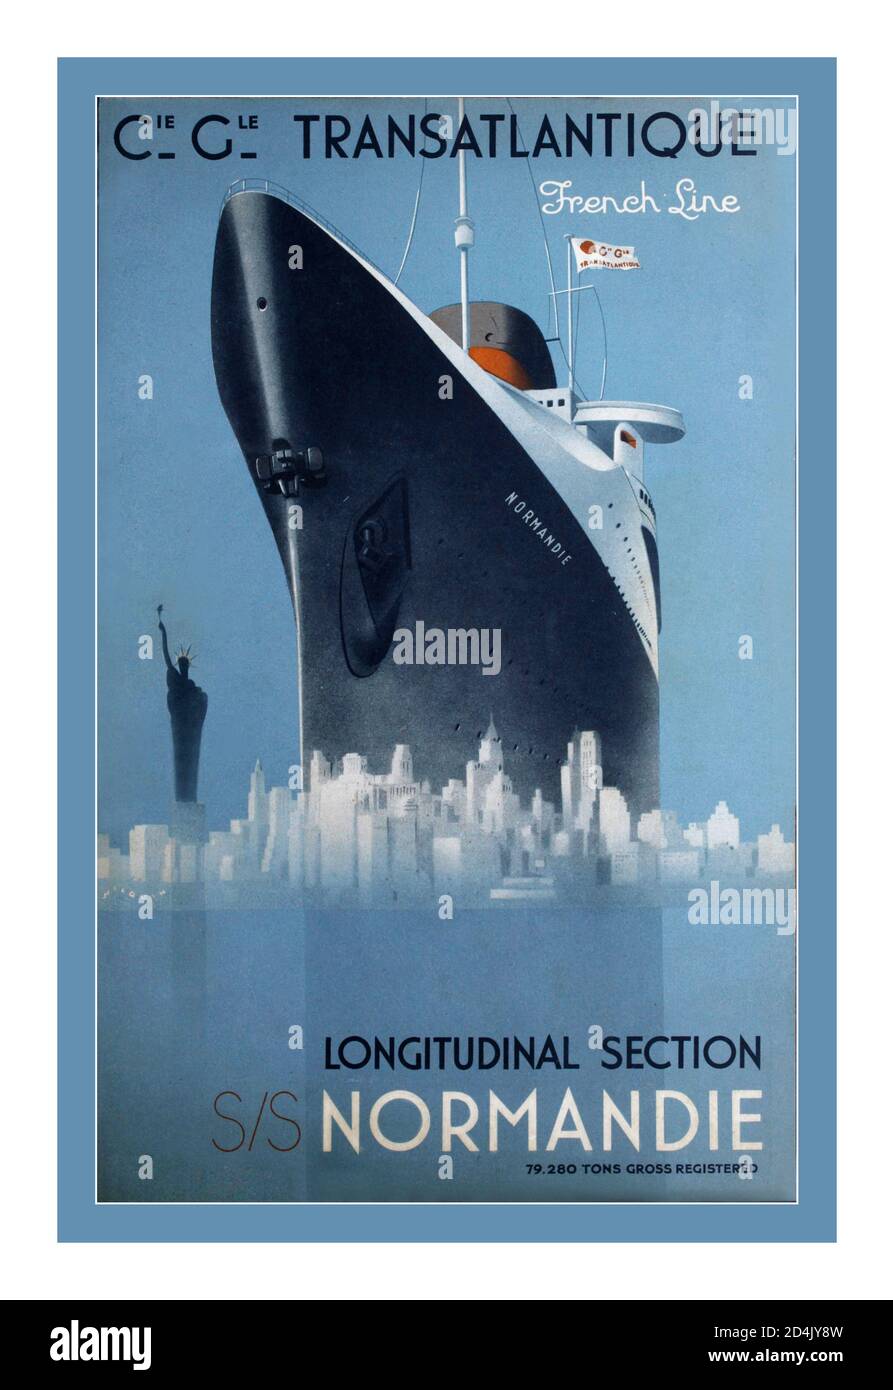 1930er JAHRE FRANZÖSISCHE LINIENSCHIFFFAHRT SS Normandie Vintage Ocean Liner Poster New York die SS Normandie war ein französischer Ozeandampfer, der in Saint-Nazaire, Frankreich, für die French Line Compagnie Générale Transatlantique gebaut wurde. 1932 ins Leben gerufen war sie das größte und schnellste Schiff der Welt, und sie behält die Auszeichnung als das leistungsstärkste Dampf-Turbo-Elektro-Fahrgastschiff jemals gebaut. Vintage Passenger Service Poster - Vintage Ocean Liner, Luxus Passagierschiffe und Twenty Century Steamship Reisen zu weltweiten Destinationen. Vintage Retro Shipping Lines und Passenger Ship Reisewerbung Stockfoto